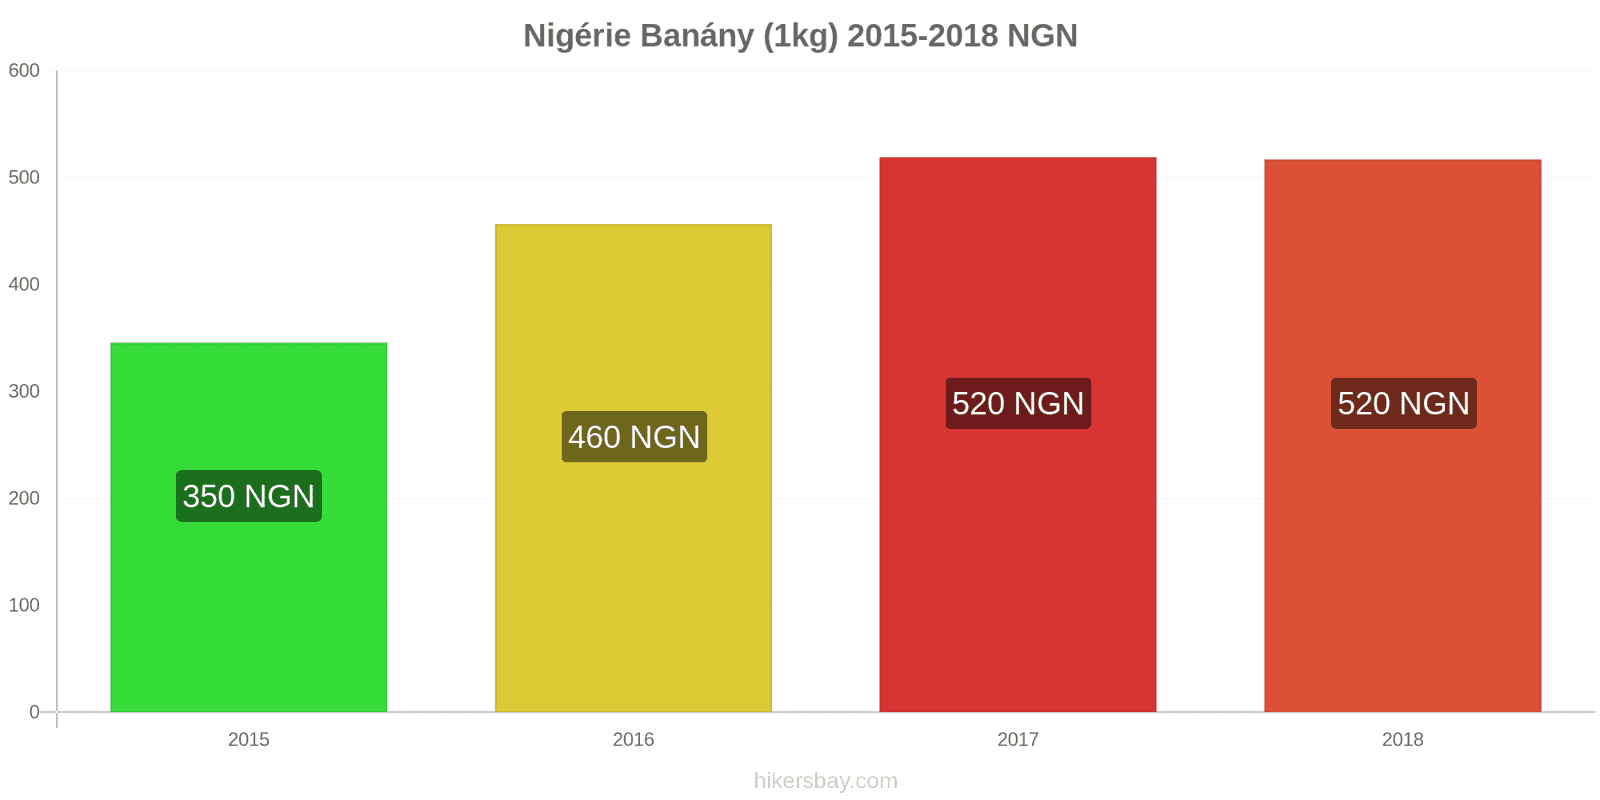 Nigérie změny cen Banány (1kg) hikersbay.com